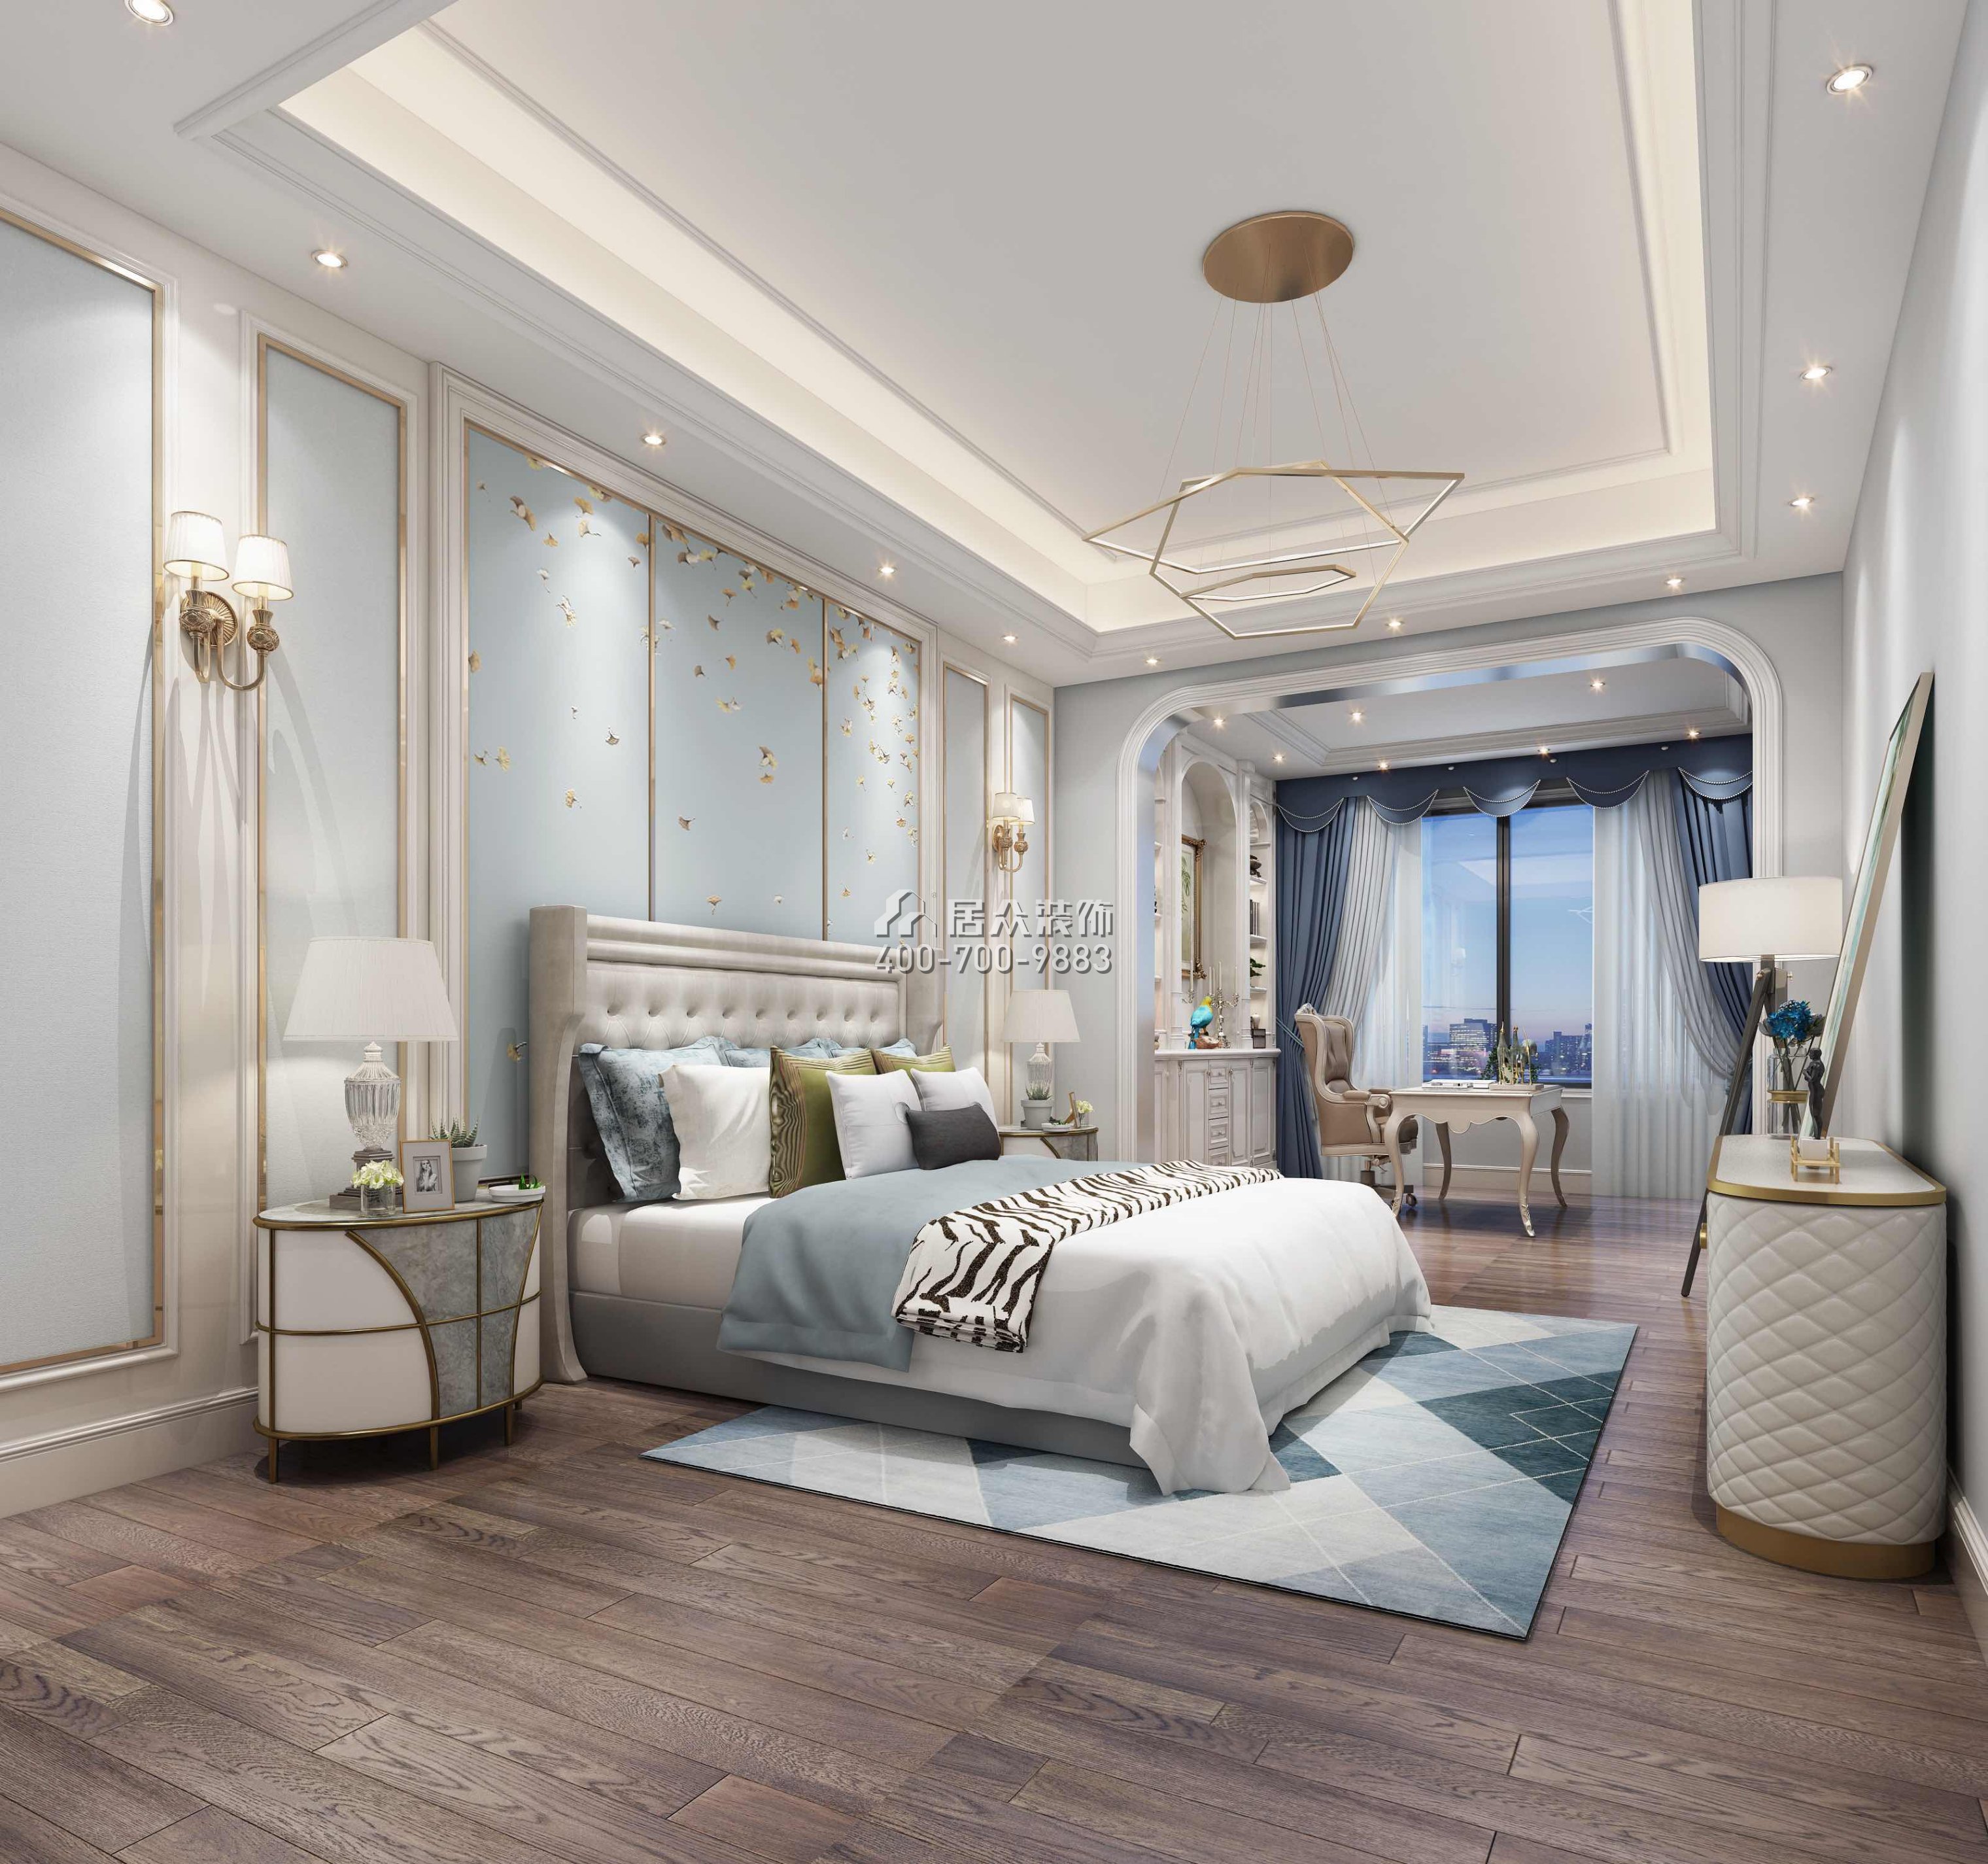 臥龍山一號500平方米歐式風格別墅戶型臥室裝修效果圖